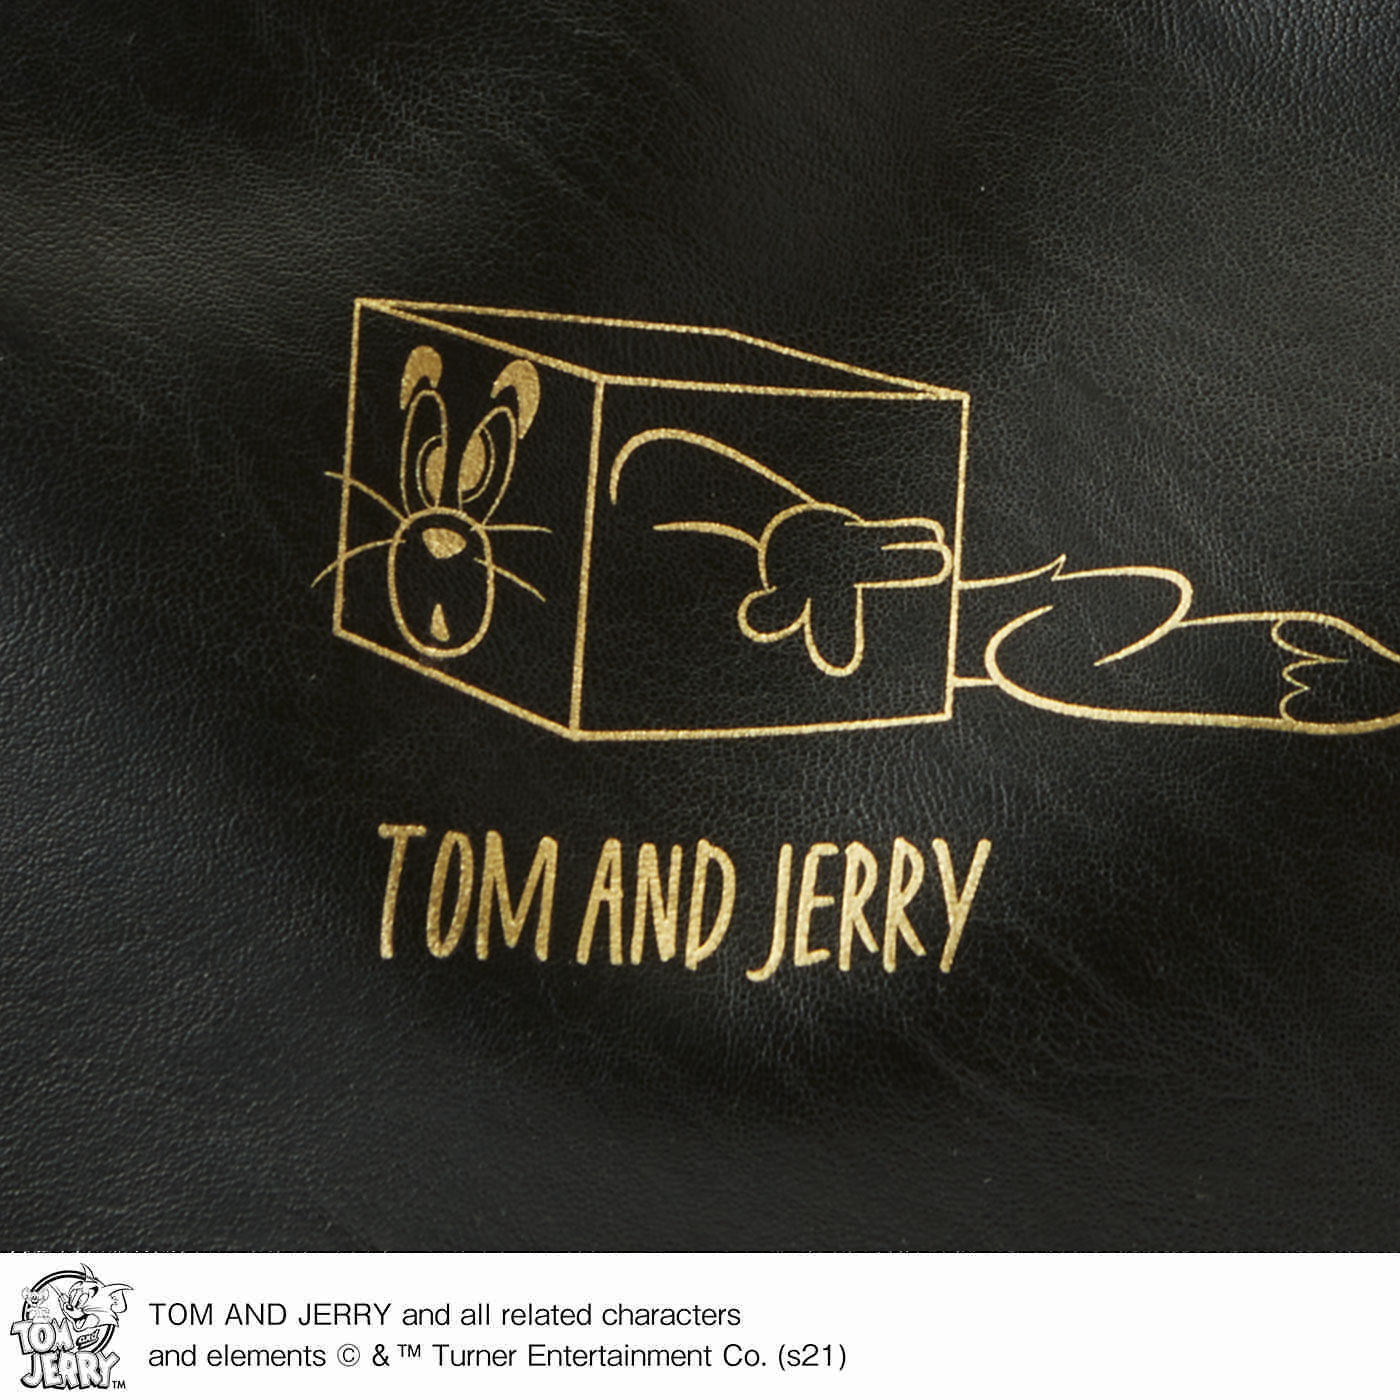 frauglatt|フラウグラット　TOM and JERRY 連れてって 大きめブラックトートバッグ〈トム〉|レザーライクな合成皮革でお手入れらくちん。トムのイラストをゴールドでプリントし、大人っぽく仕上げました。裏面はプリントが入っていないので、シーンに合わせて使えます。いつも一緒のお守り感覚♪